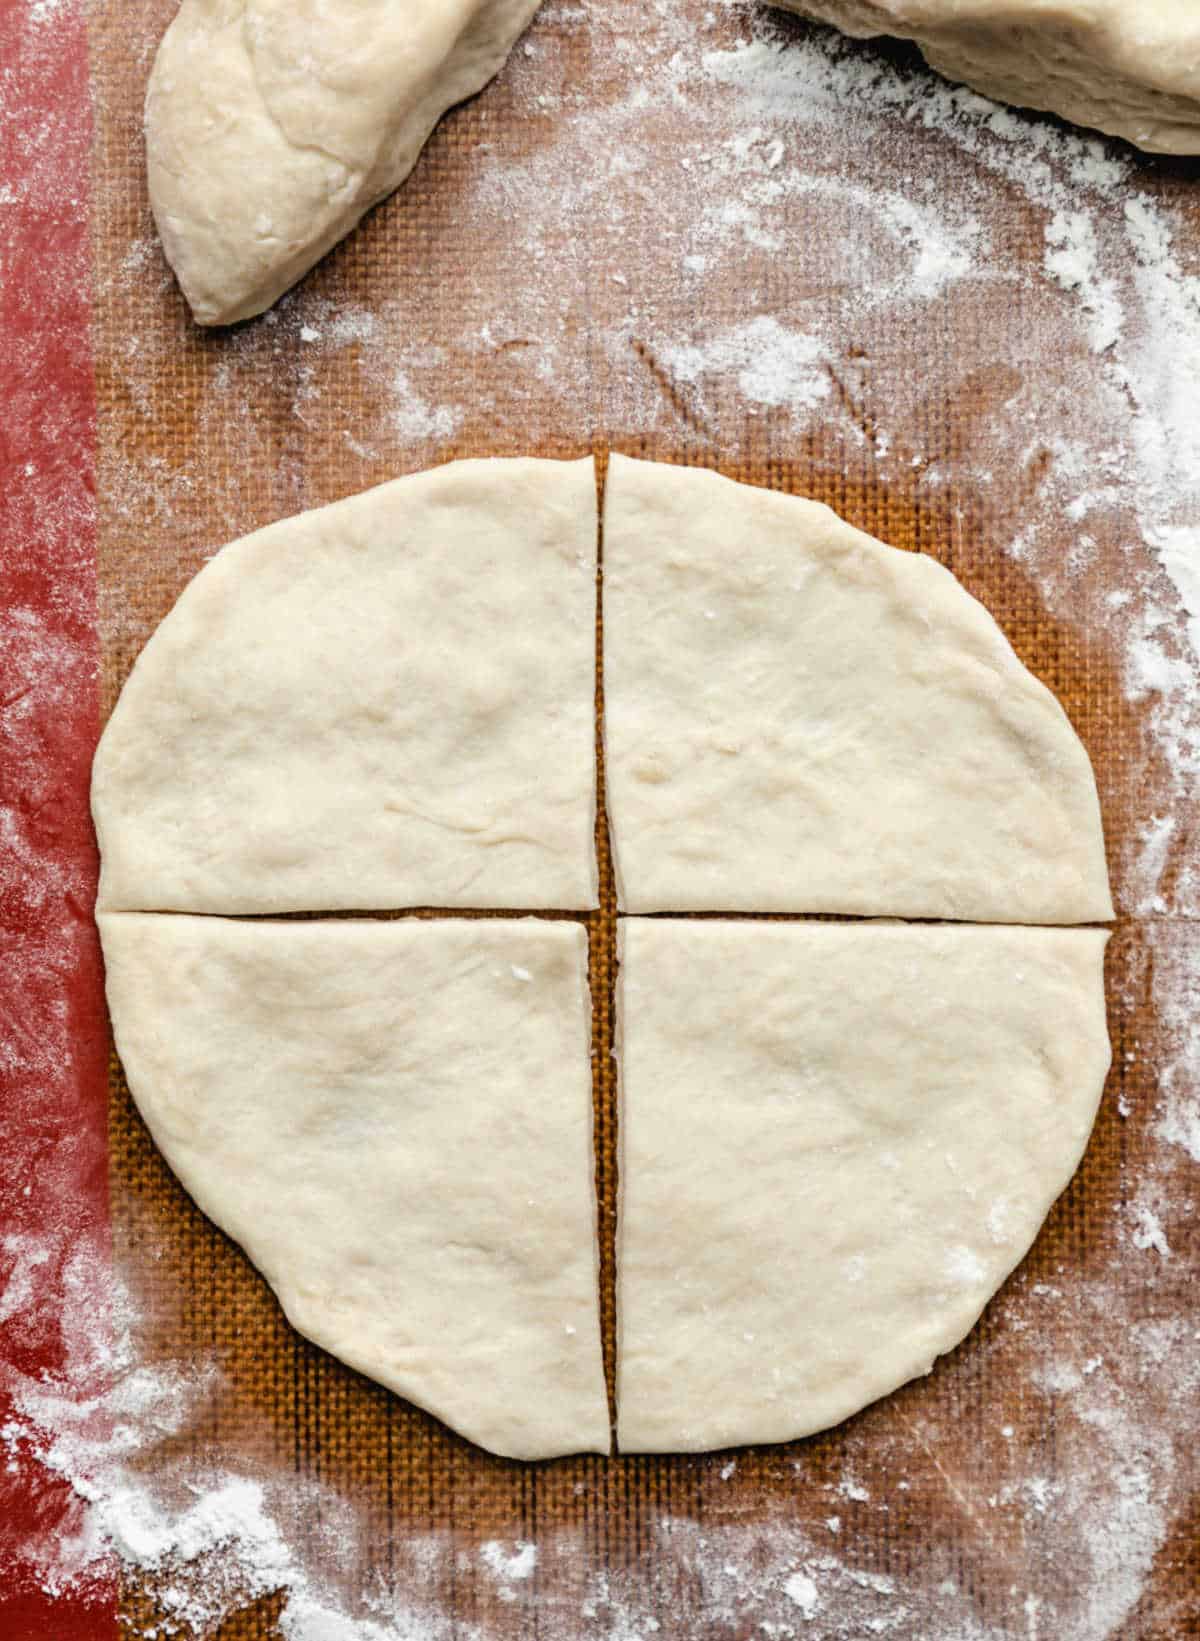 A piece of sopaipilla dough cut into 4 pieces. 